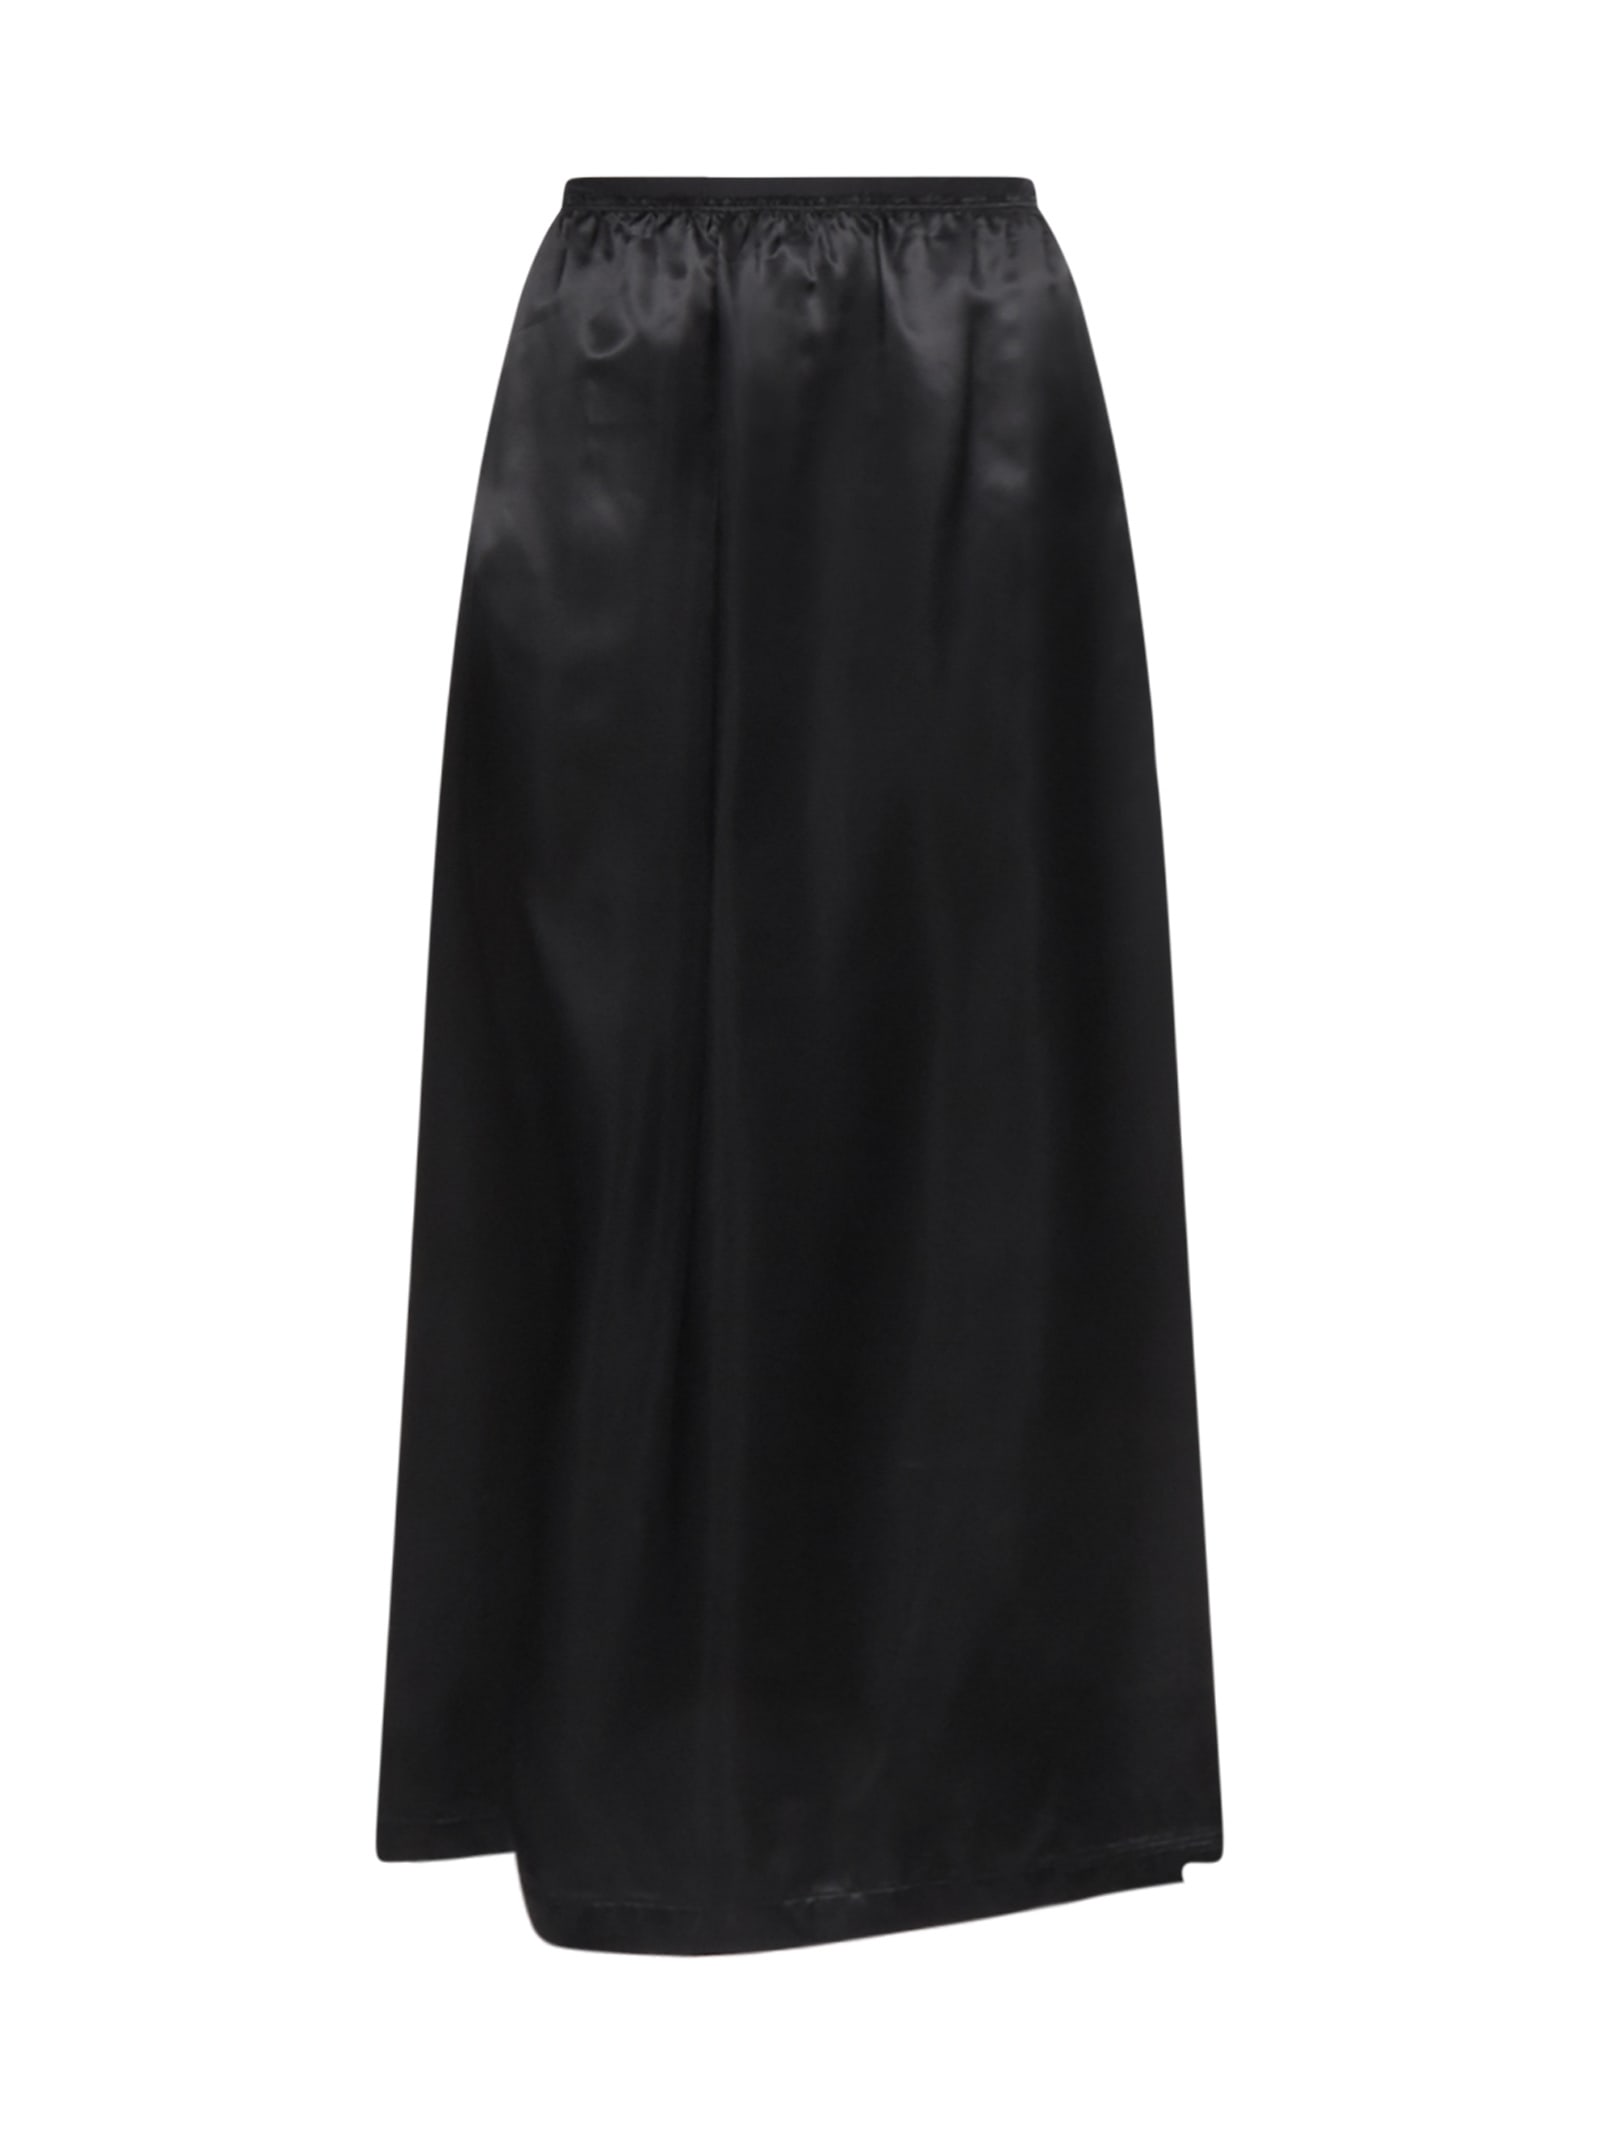 Mm6 Maison Margiela Satin Midi Skirt In Black